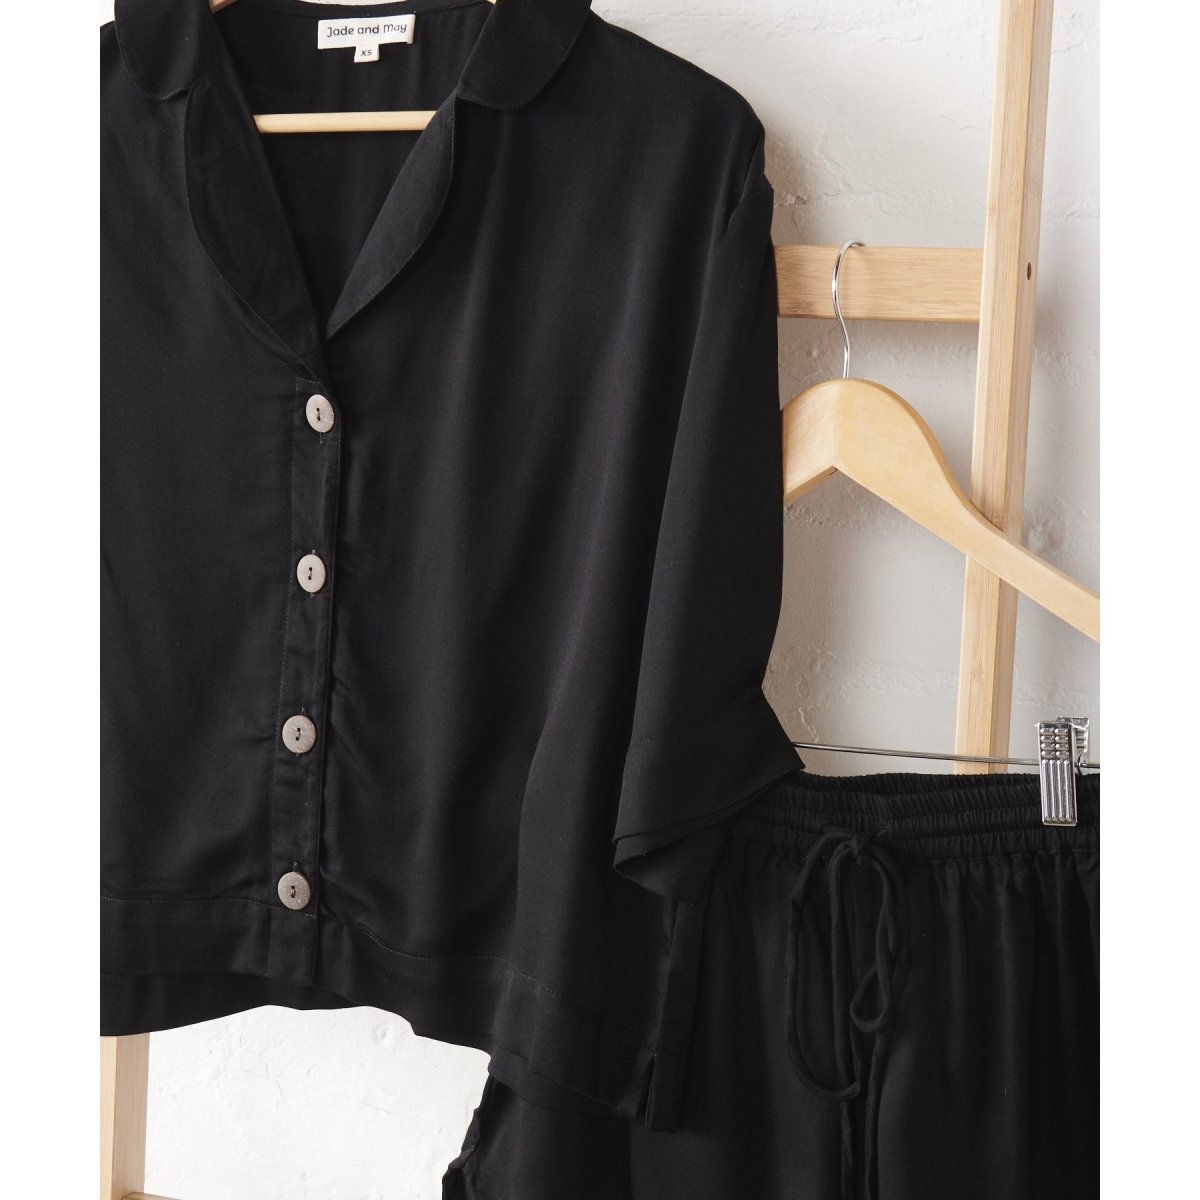 Bamboo Pyjama Set - Crop Button Up + Pant Set in Black-Jade and May-Pajamas-Jade and May